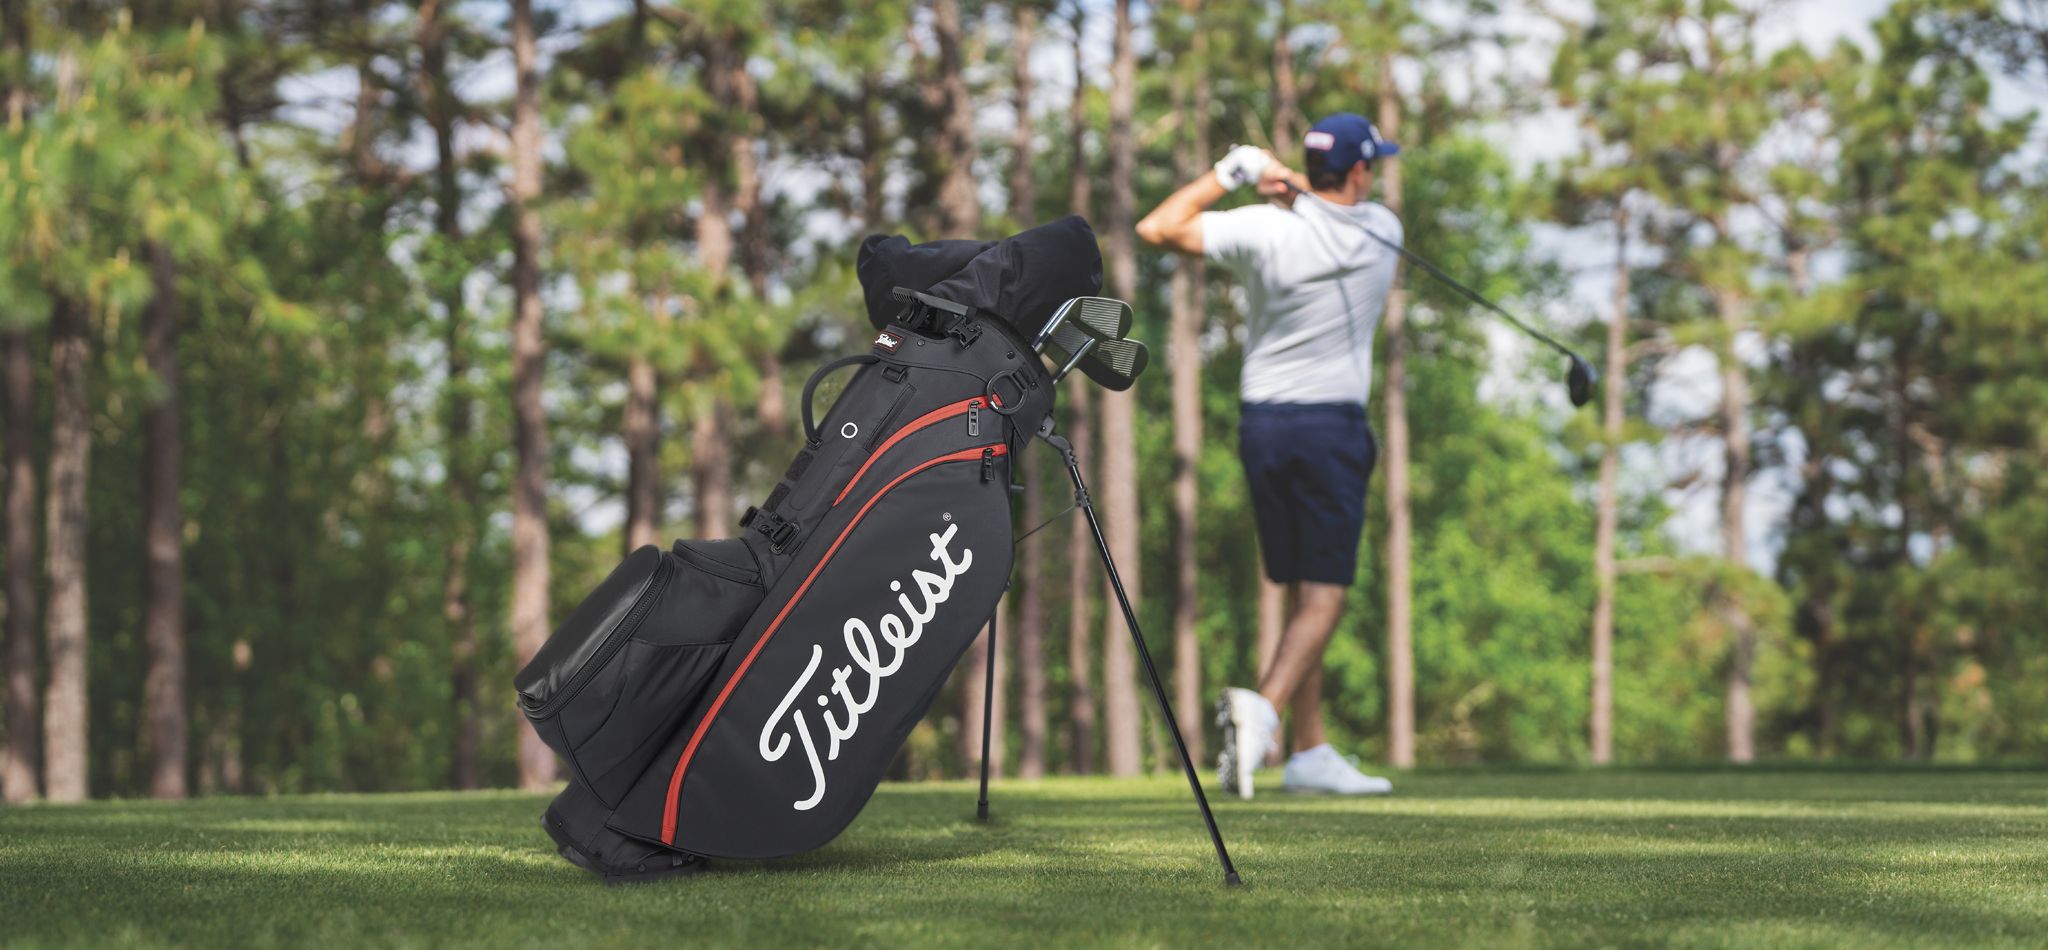 Titleist Golf Bags